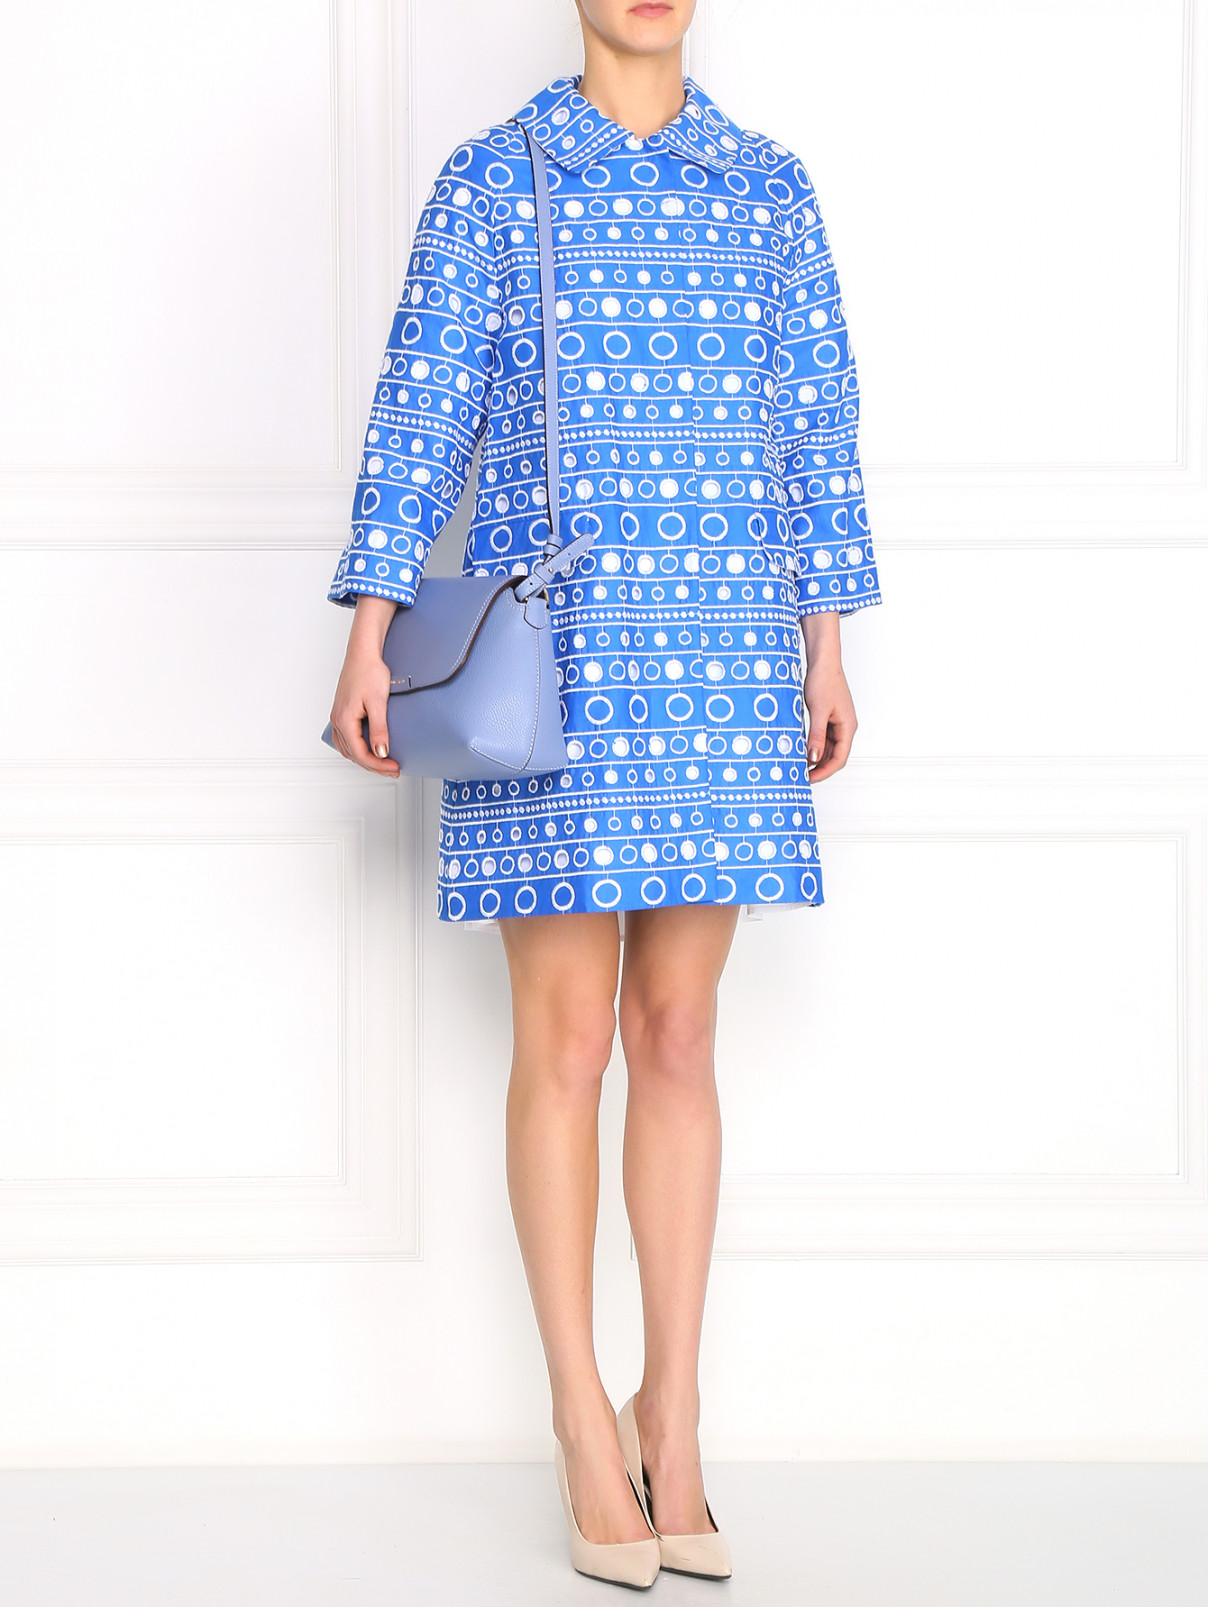 Пальто из хлопка с узором Moschino Boutique  –  Модель Общий вид  – Цвет:  Синий